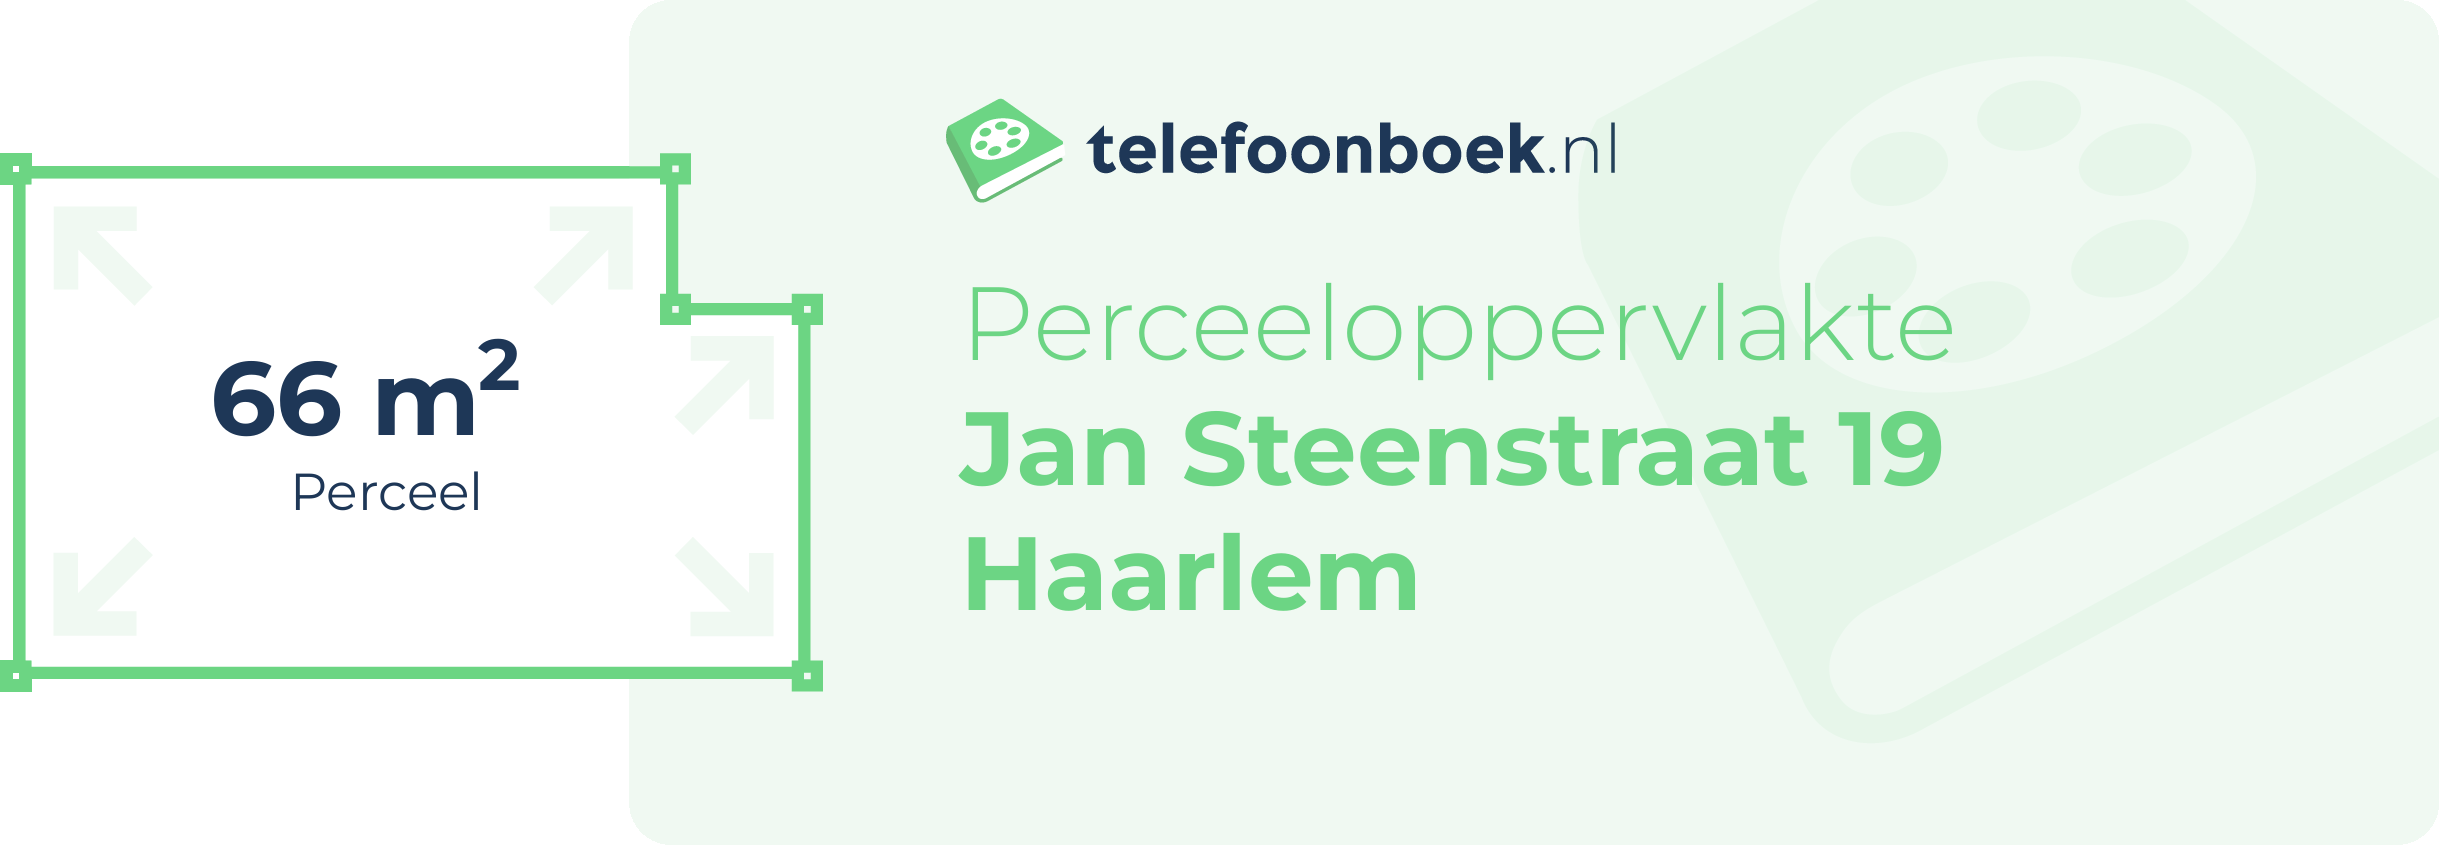 Perceeloppervlakte Jan Steenstraat 19 Haarlem